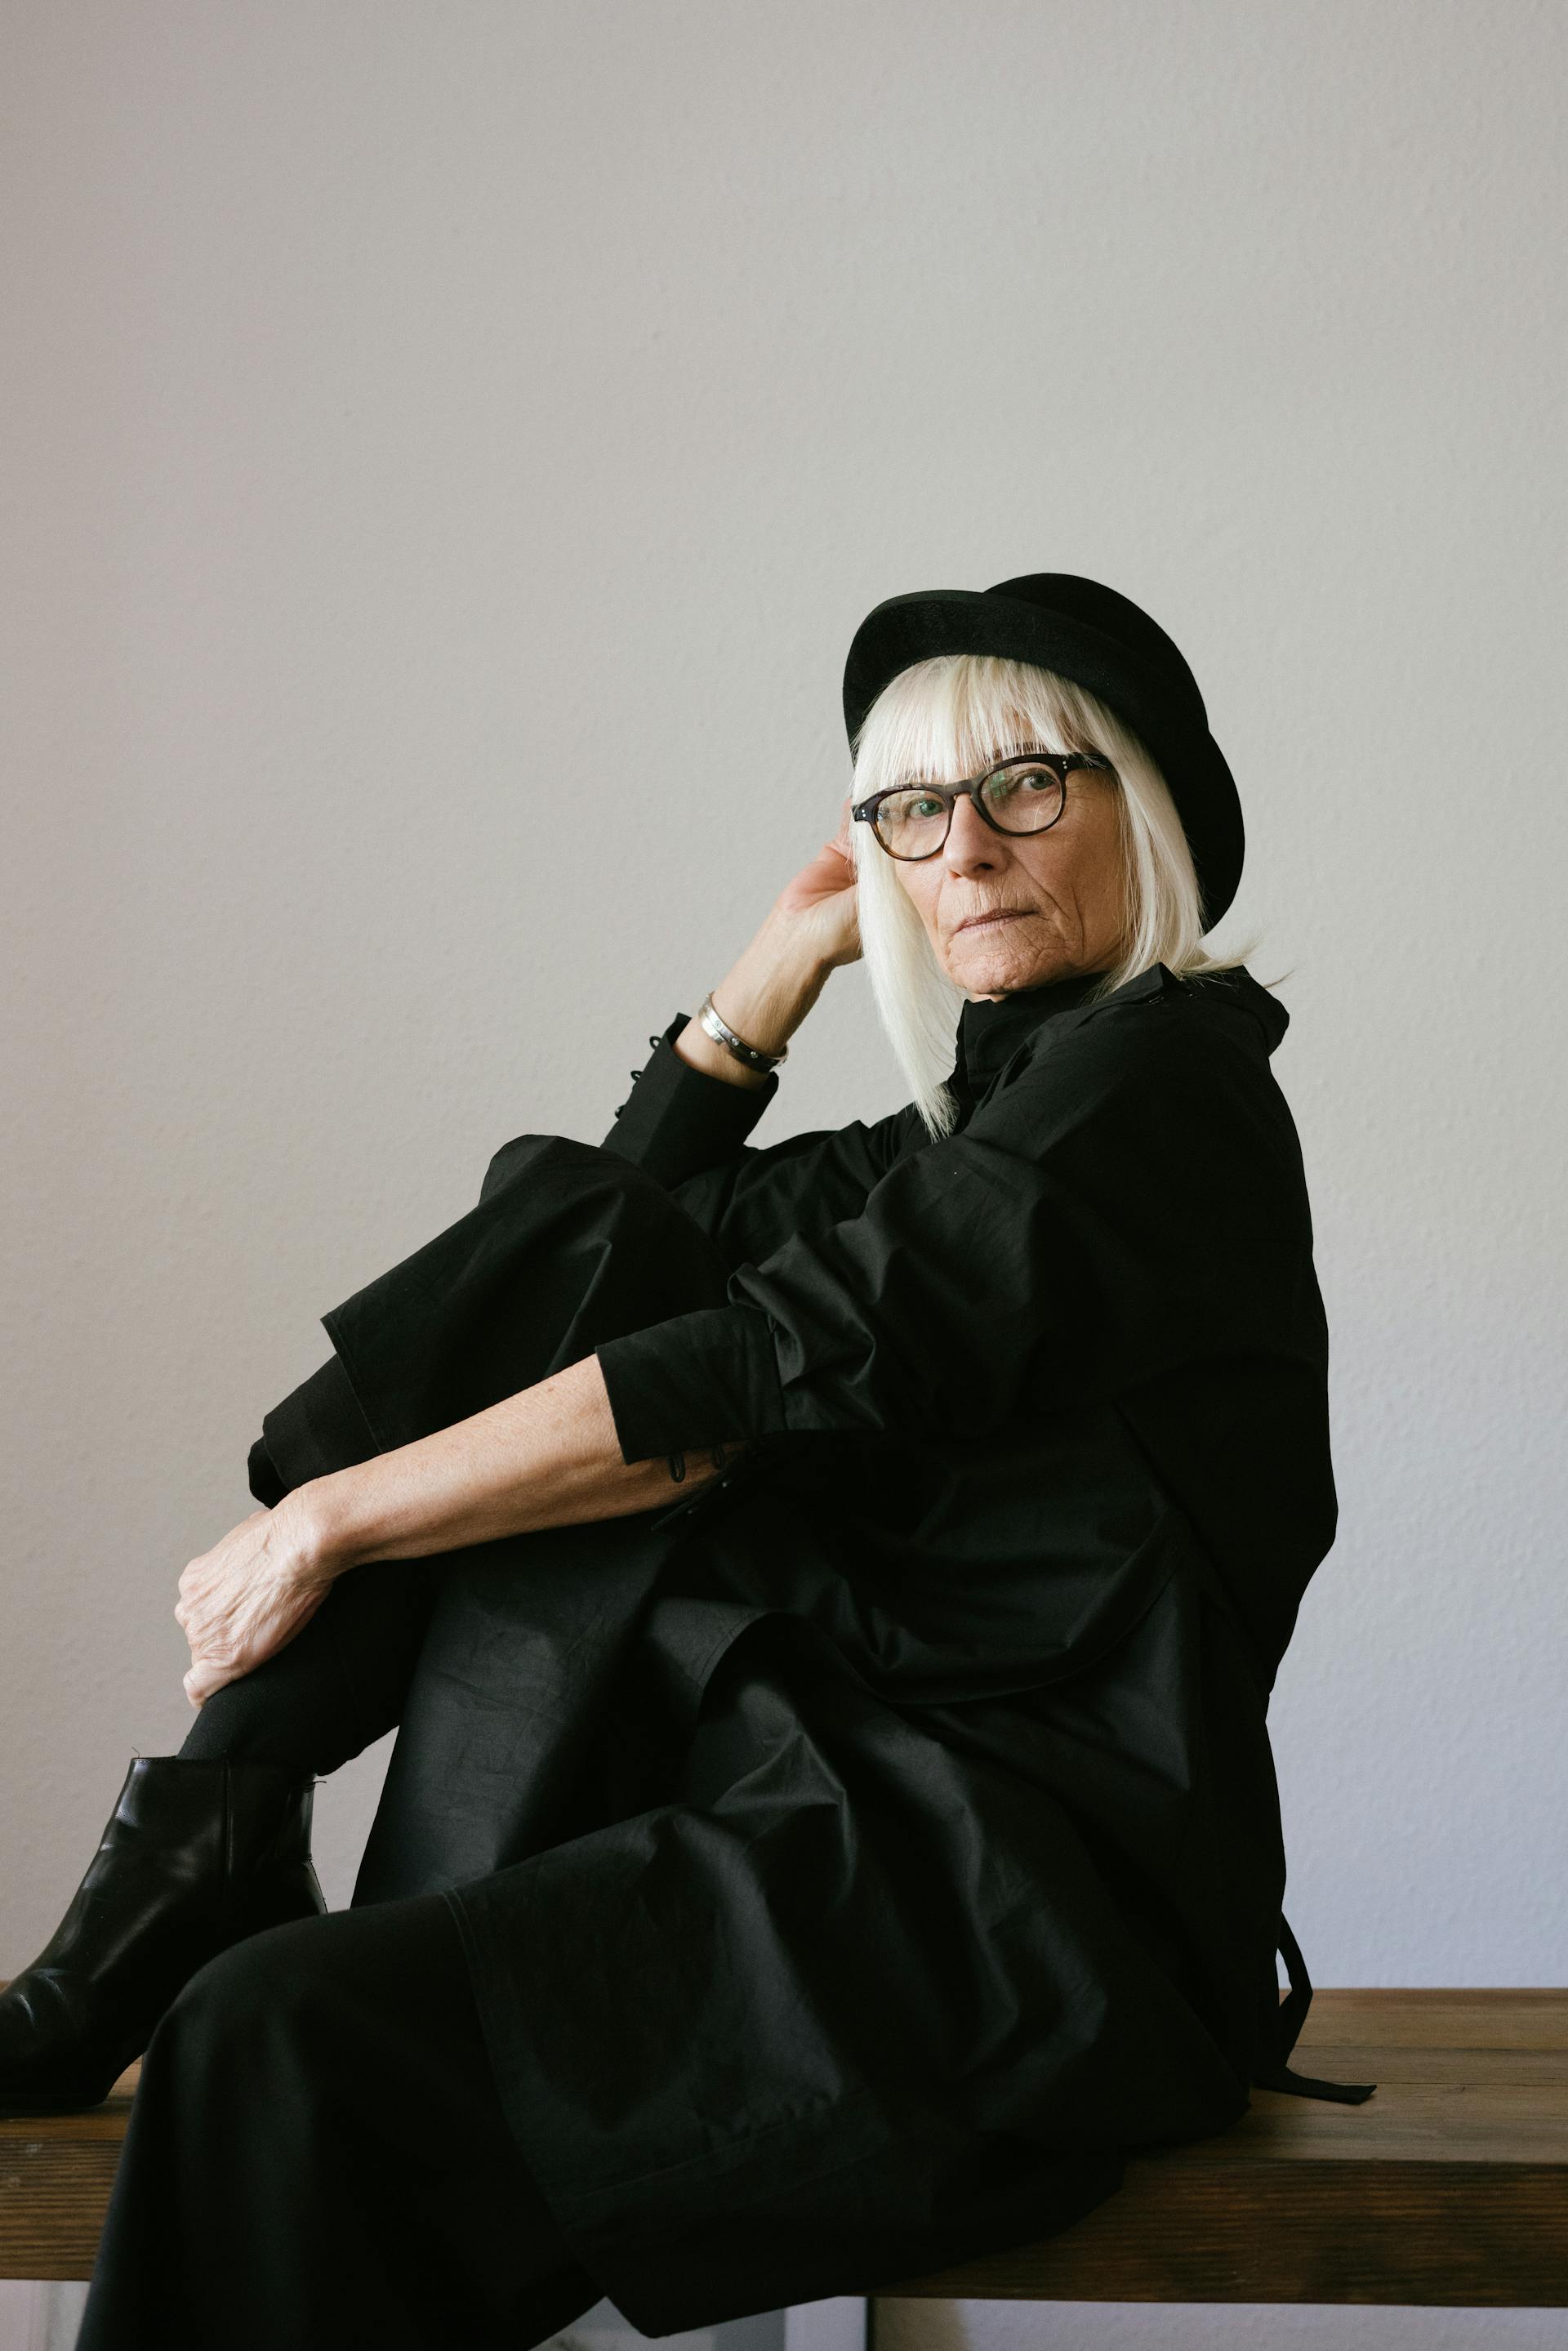 An older woman dressed in black | Source: Pexels